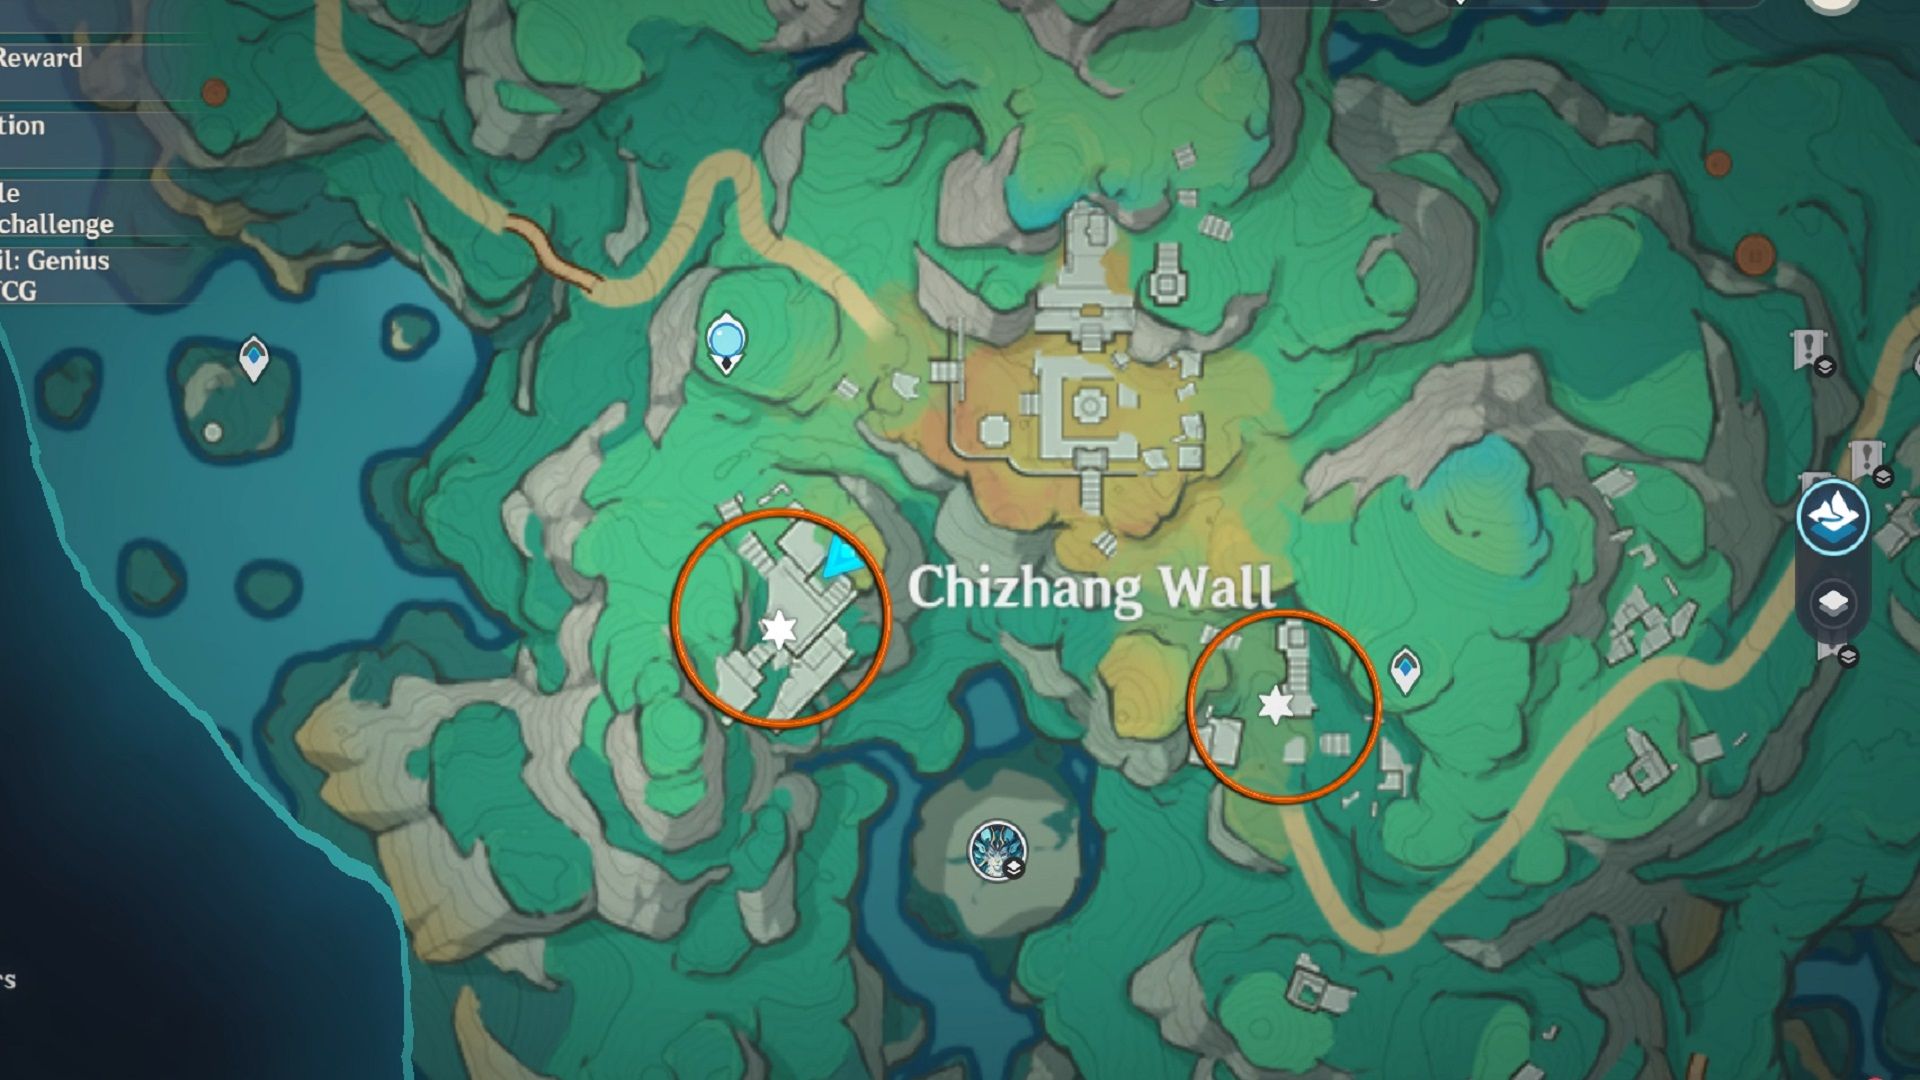 Mur Chizhang sur la carte du monde dans Genshin Impact